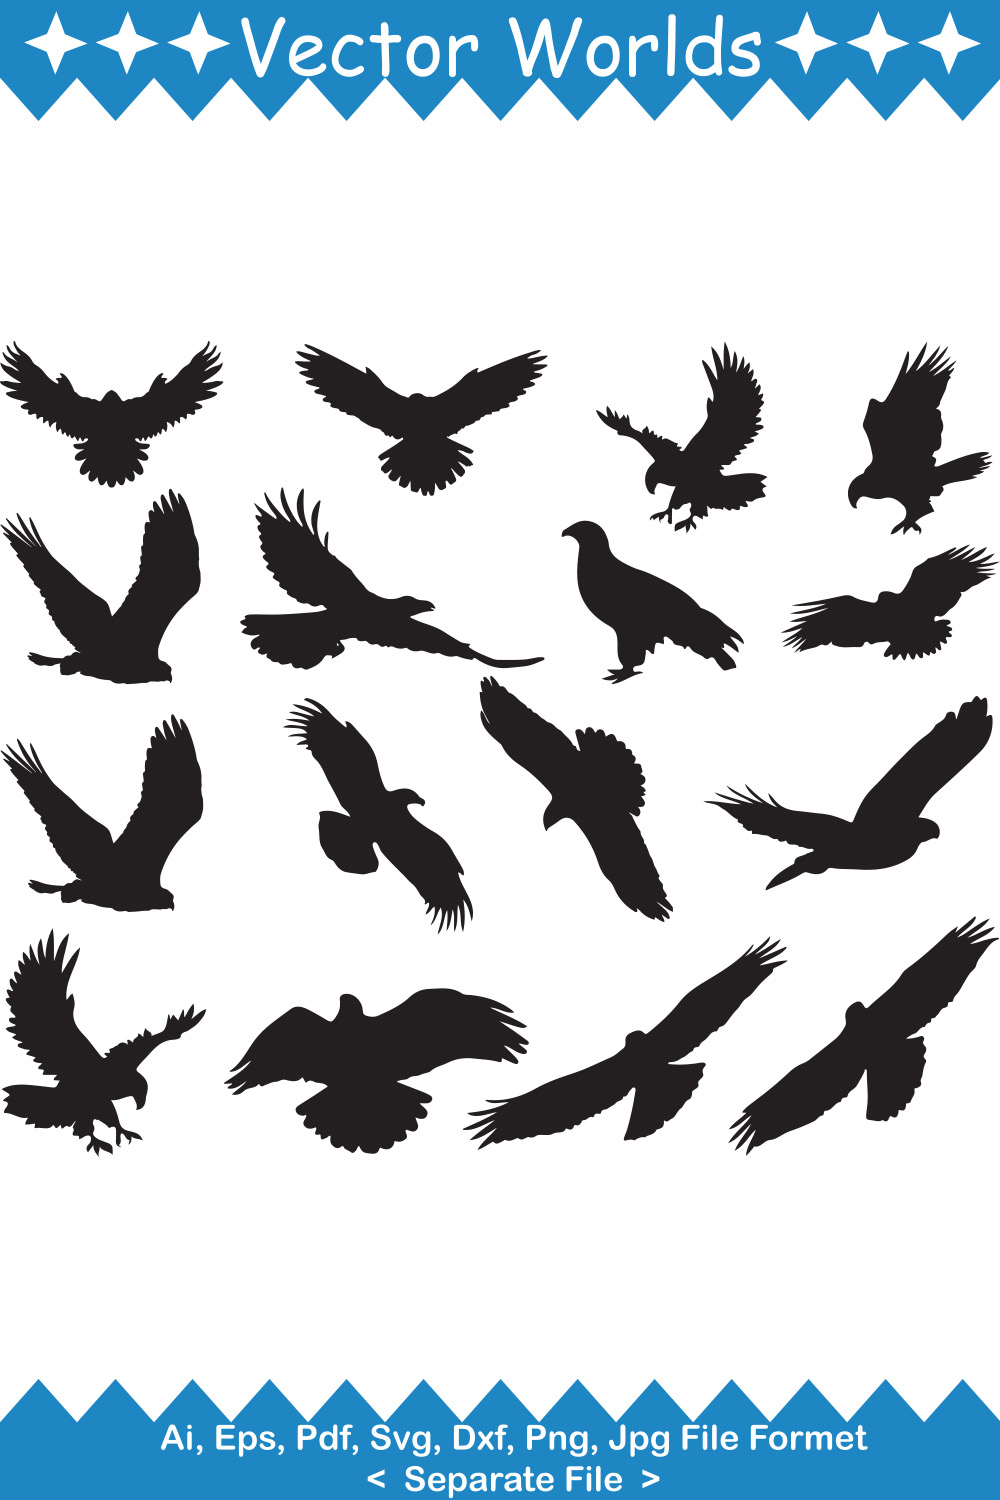 Falcon Bird SVG Vector Design pinterest image.